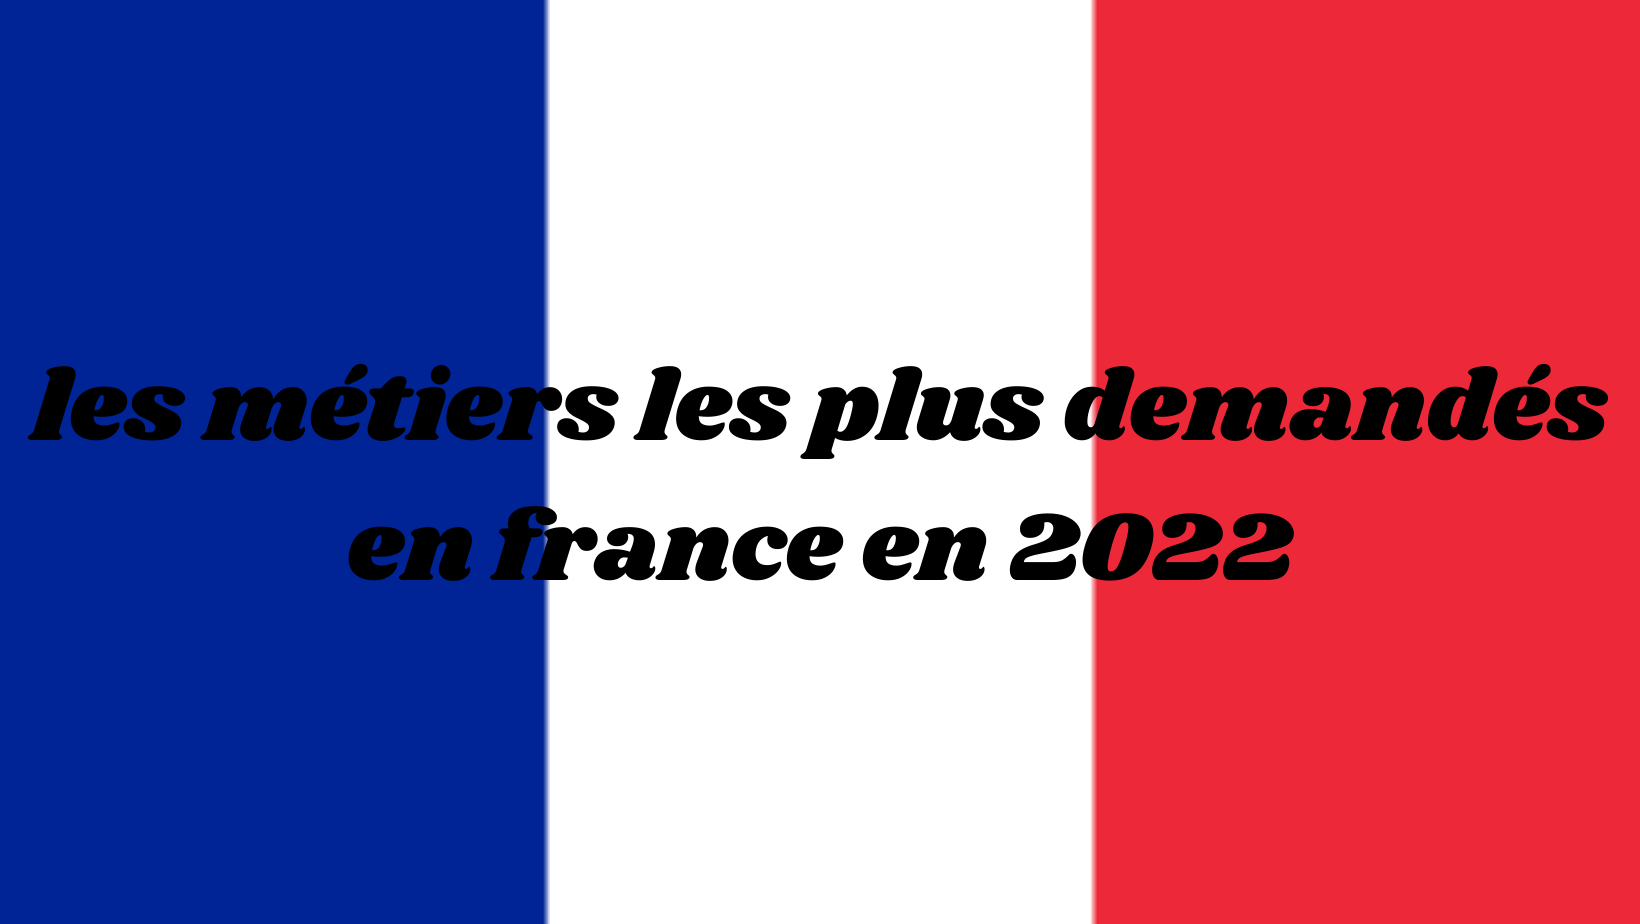 Les métiers qui recrutent  en France en 2022